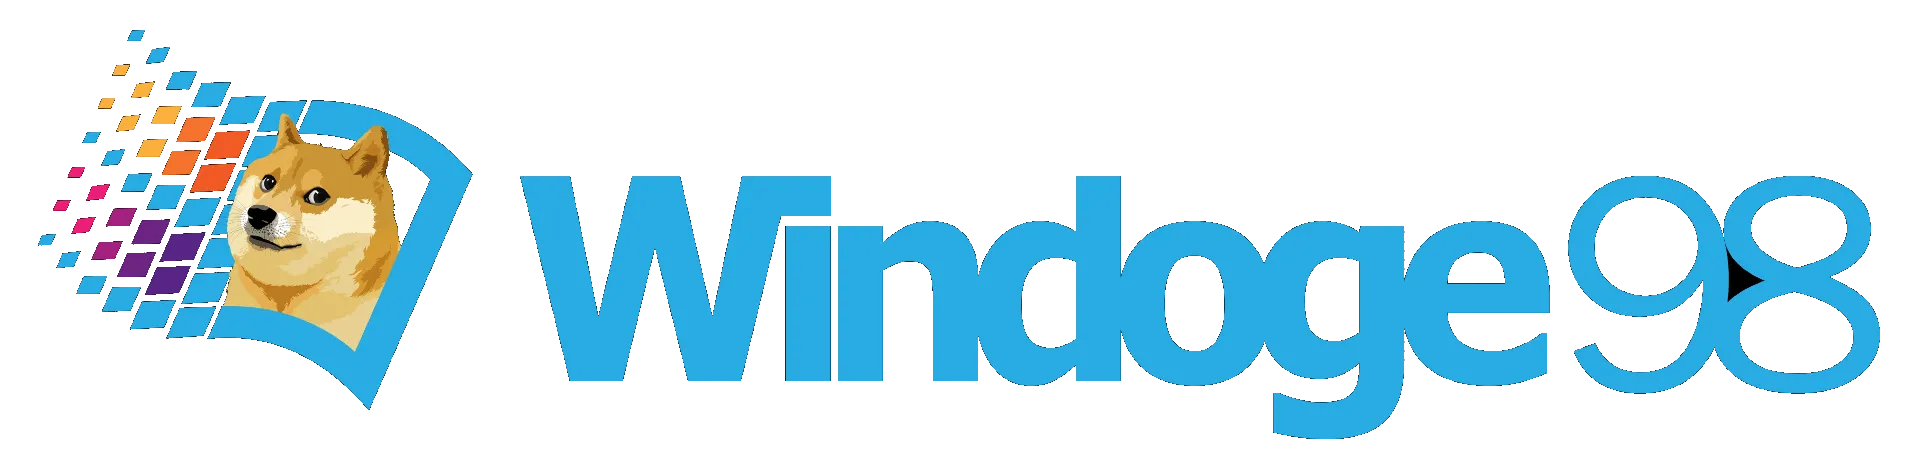 Windoge98 Footer Logo